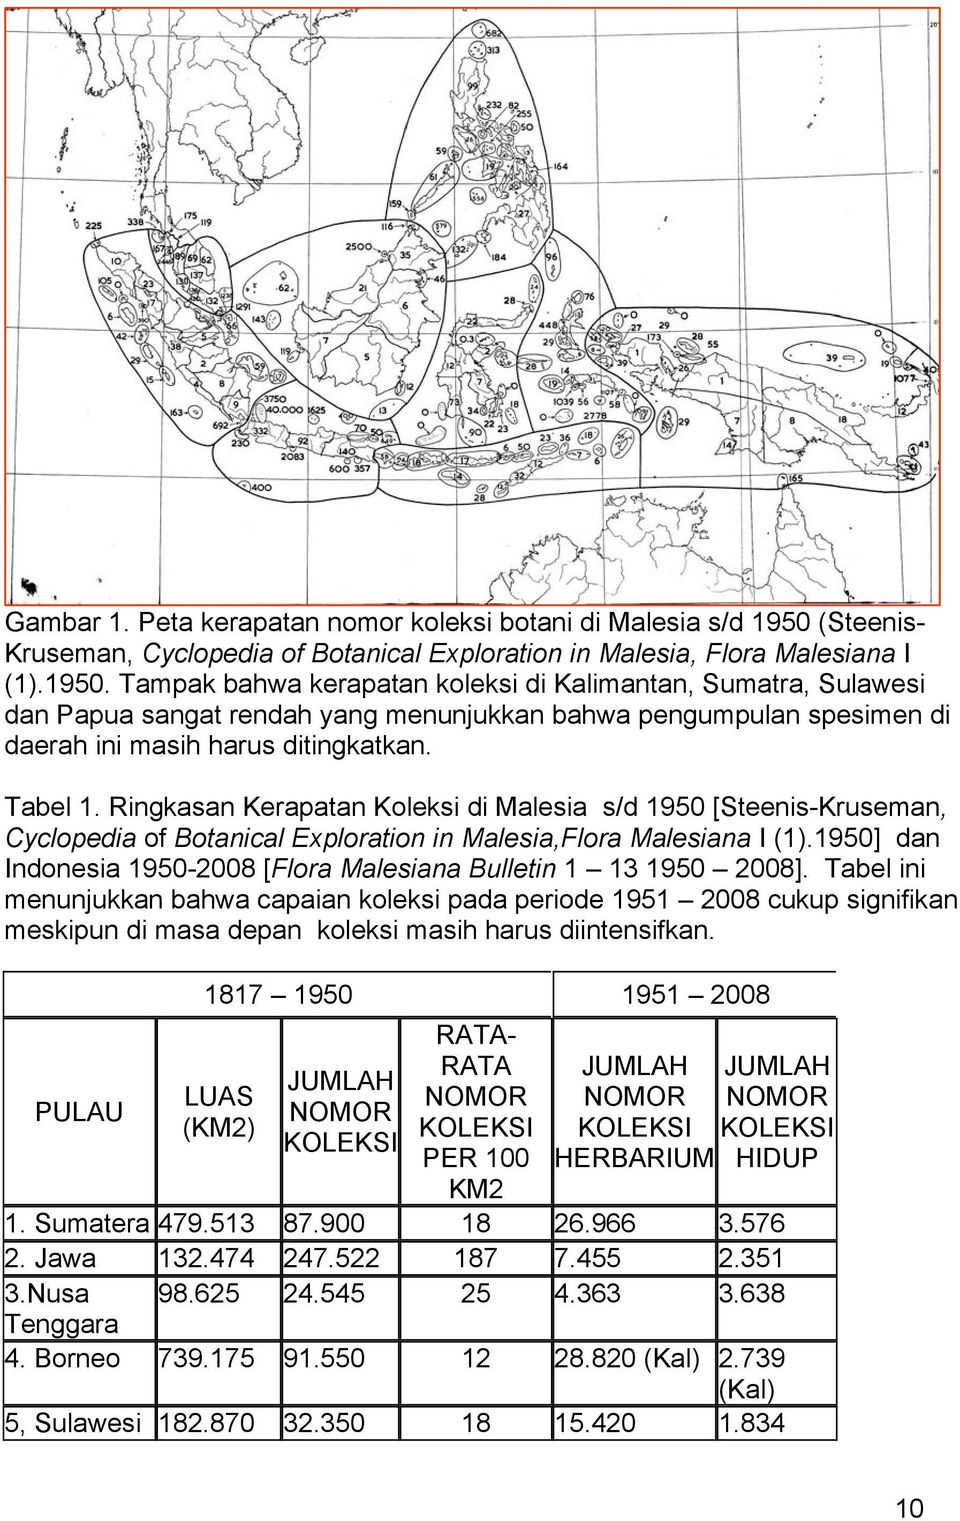 Tampak bahwa kerapatan koleksi di Kalimantan, Sumatra, Sulawesi dan Papua sangat rendah yang menunjukkan bahwa pengumpulan spesimen di daerah ini masih harus ditingkatkan. Tabel 1.